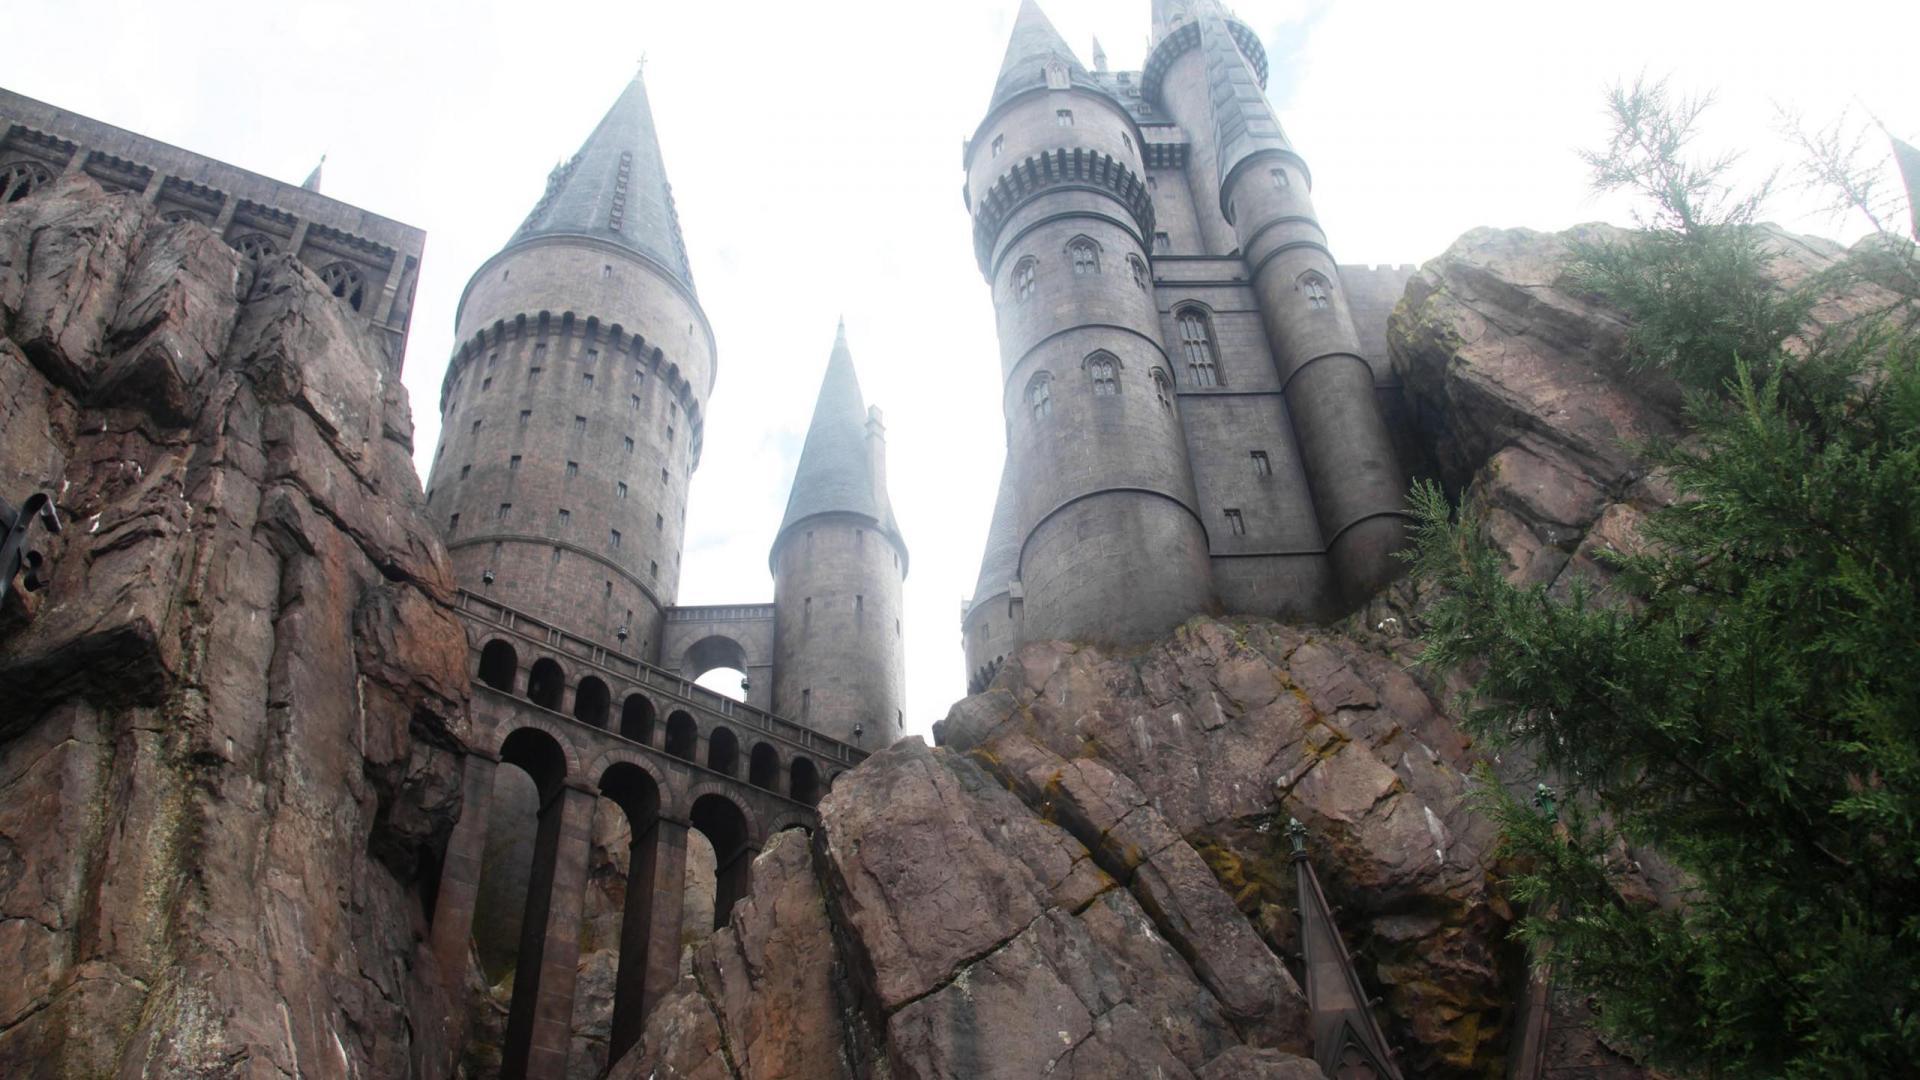 Hogwarts Castle Wallpaper HD